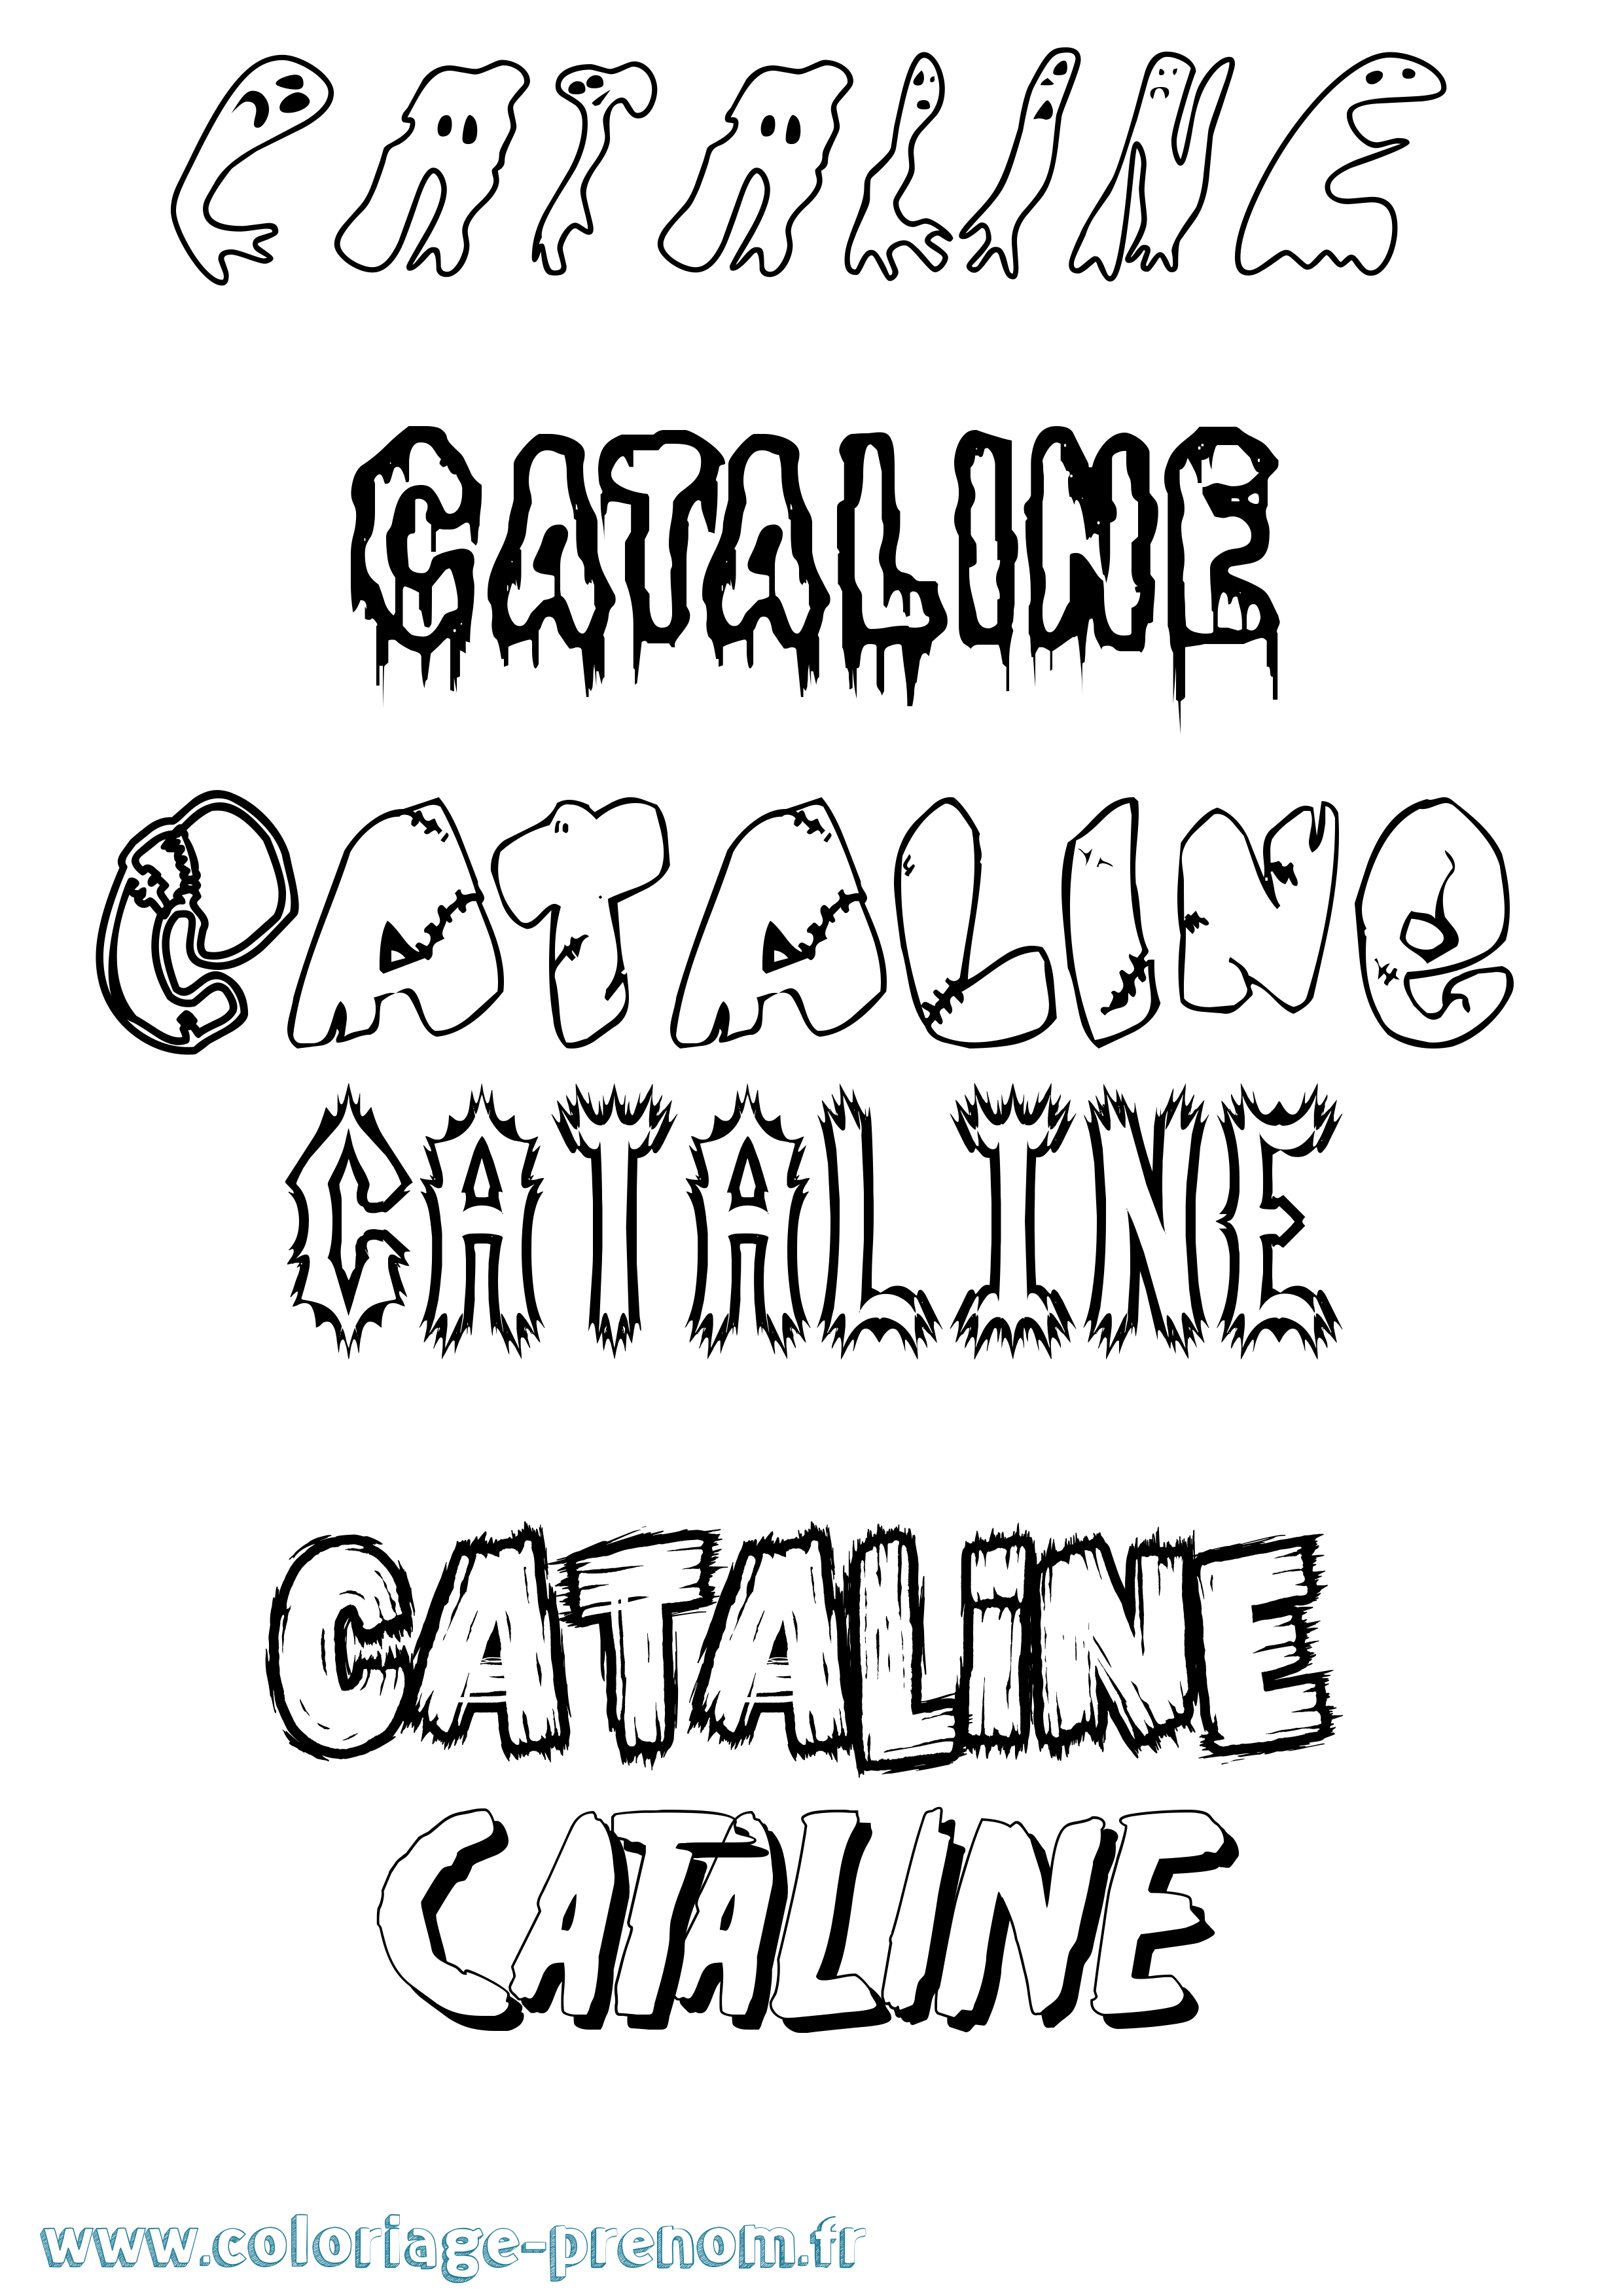 Coloriage prénom Cataline Frisson